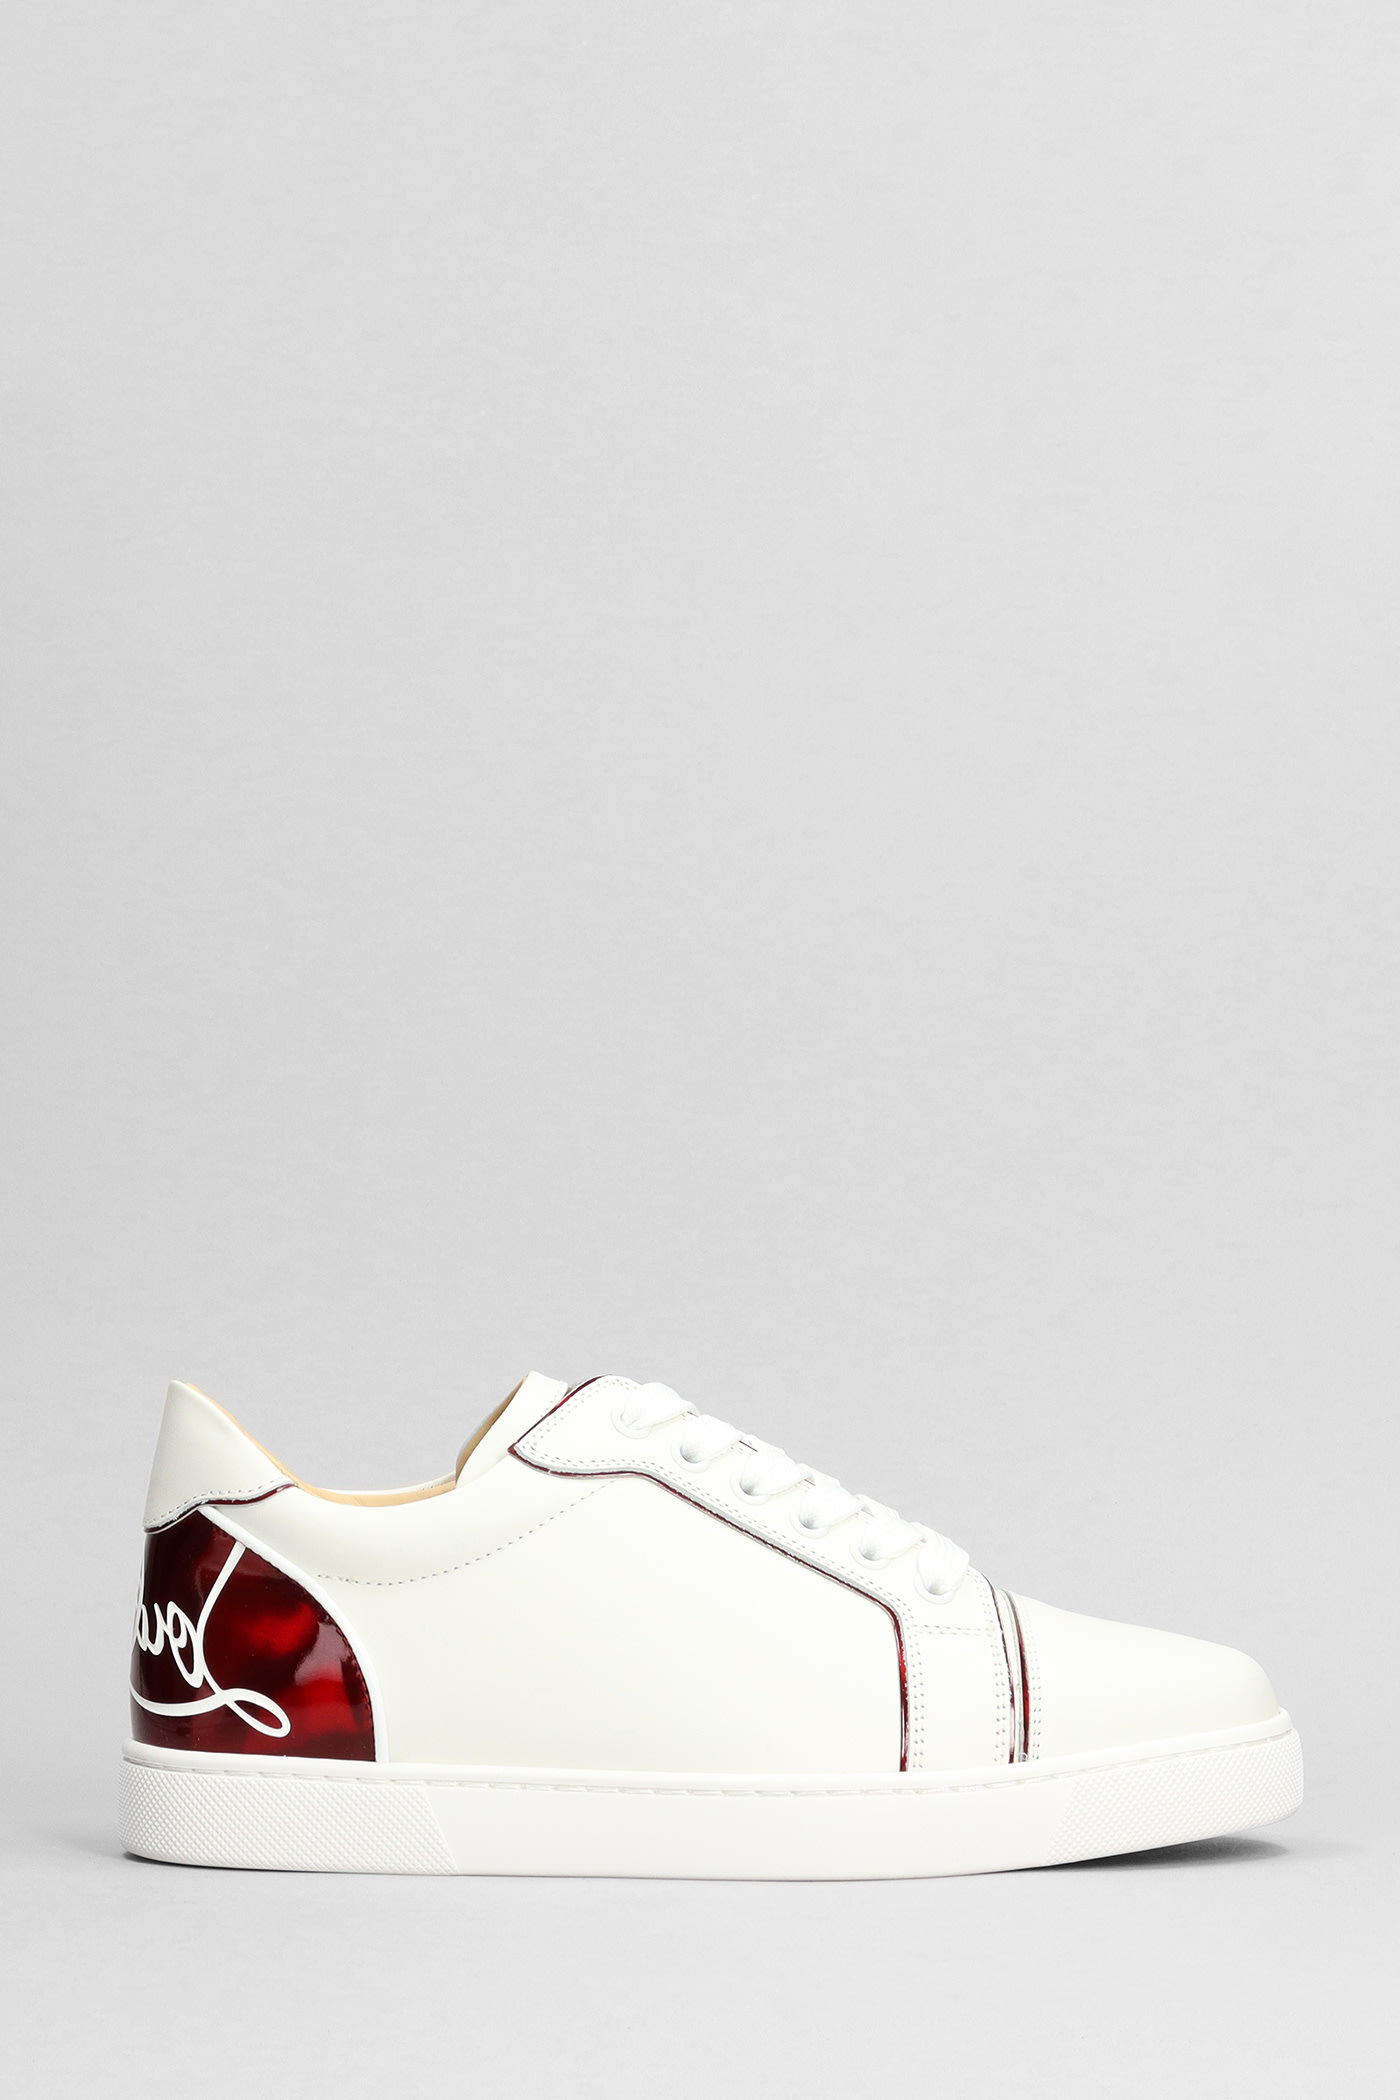 Fun Vieira Sneakers In White Leather